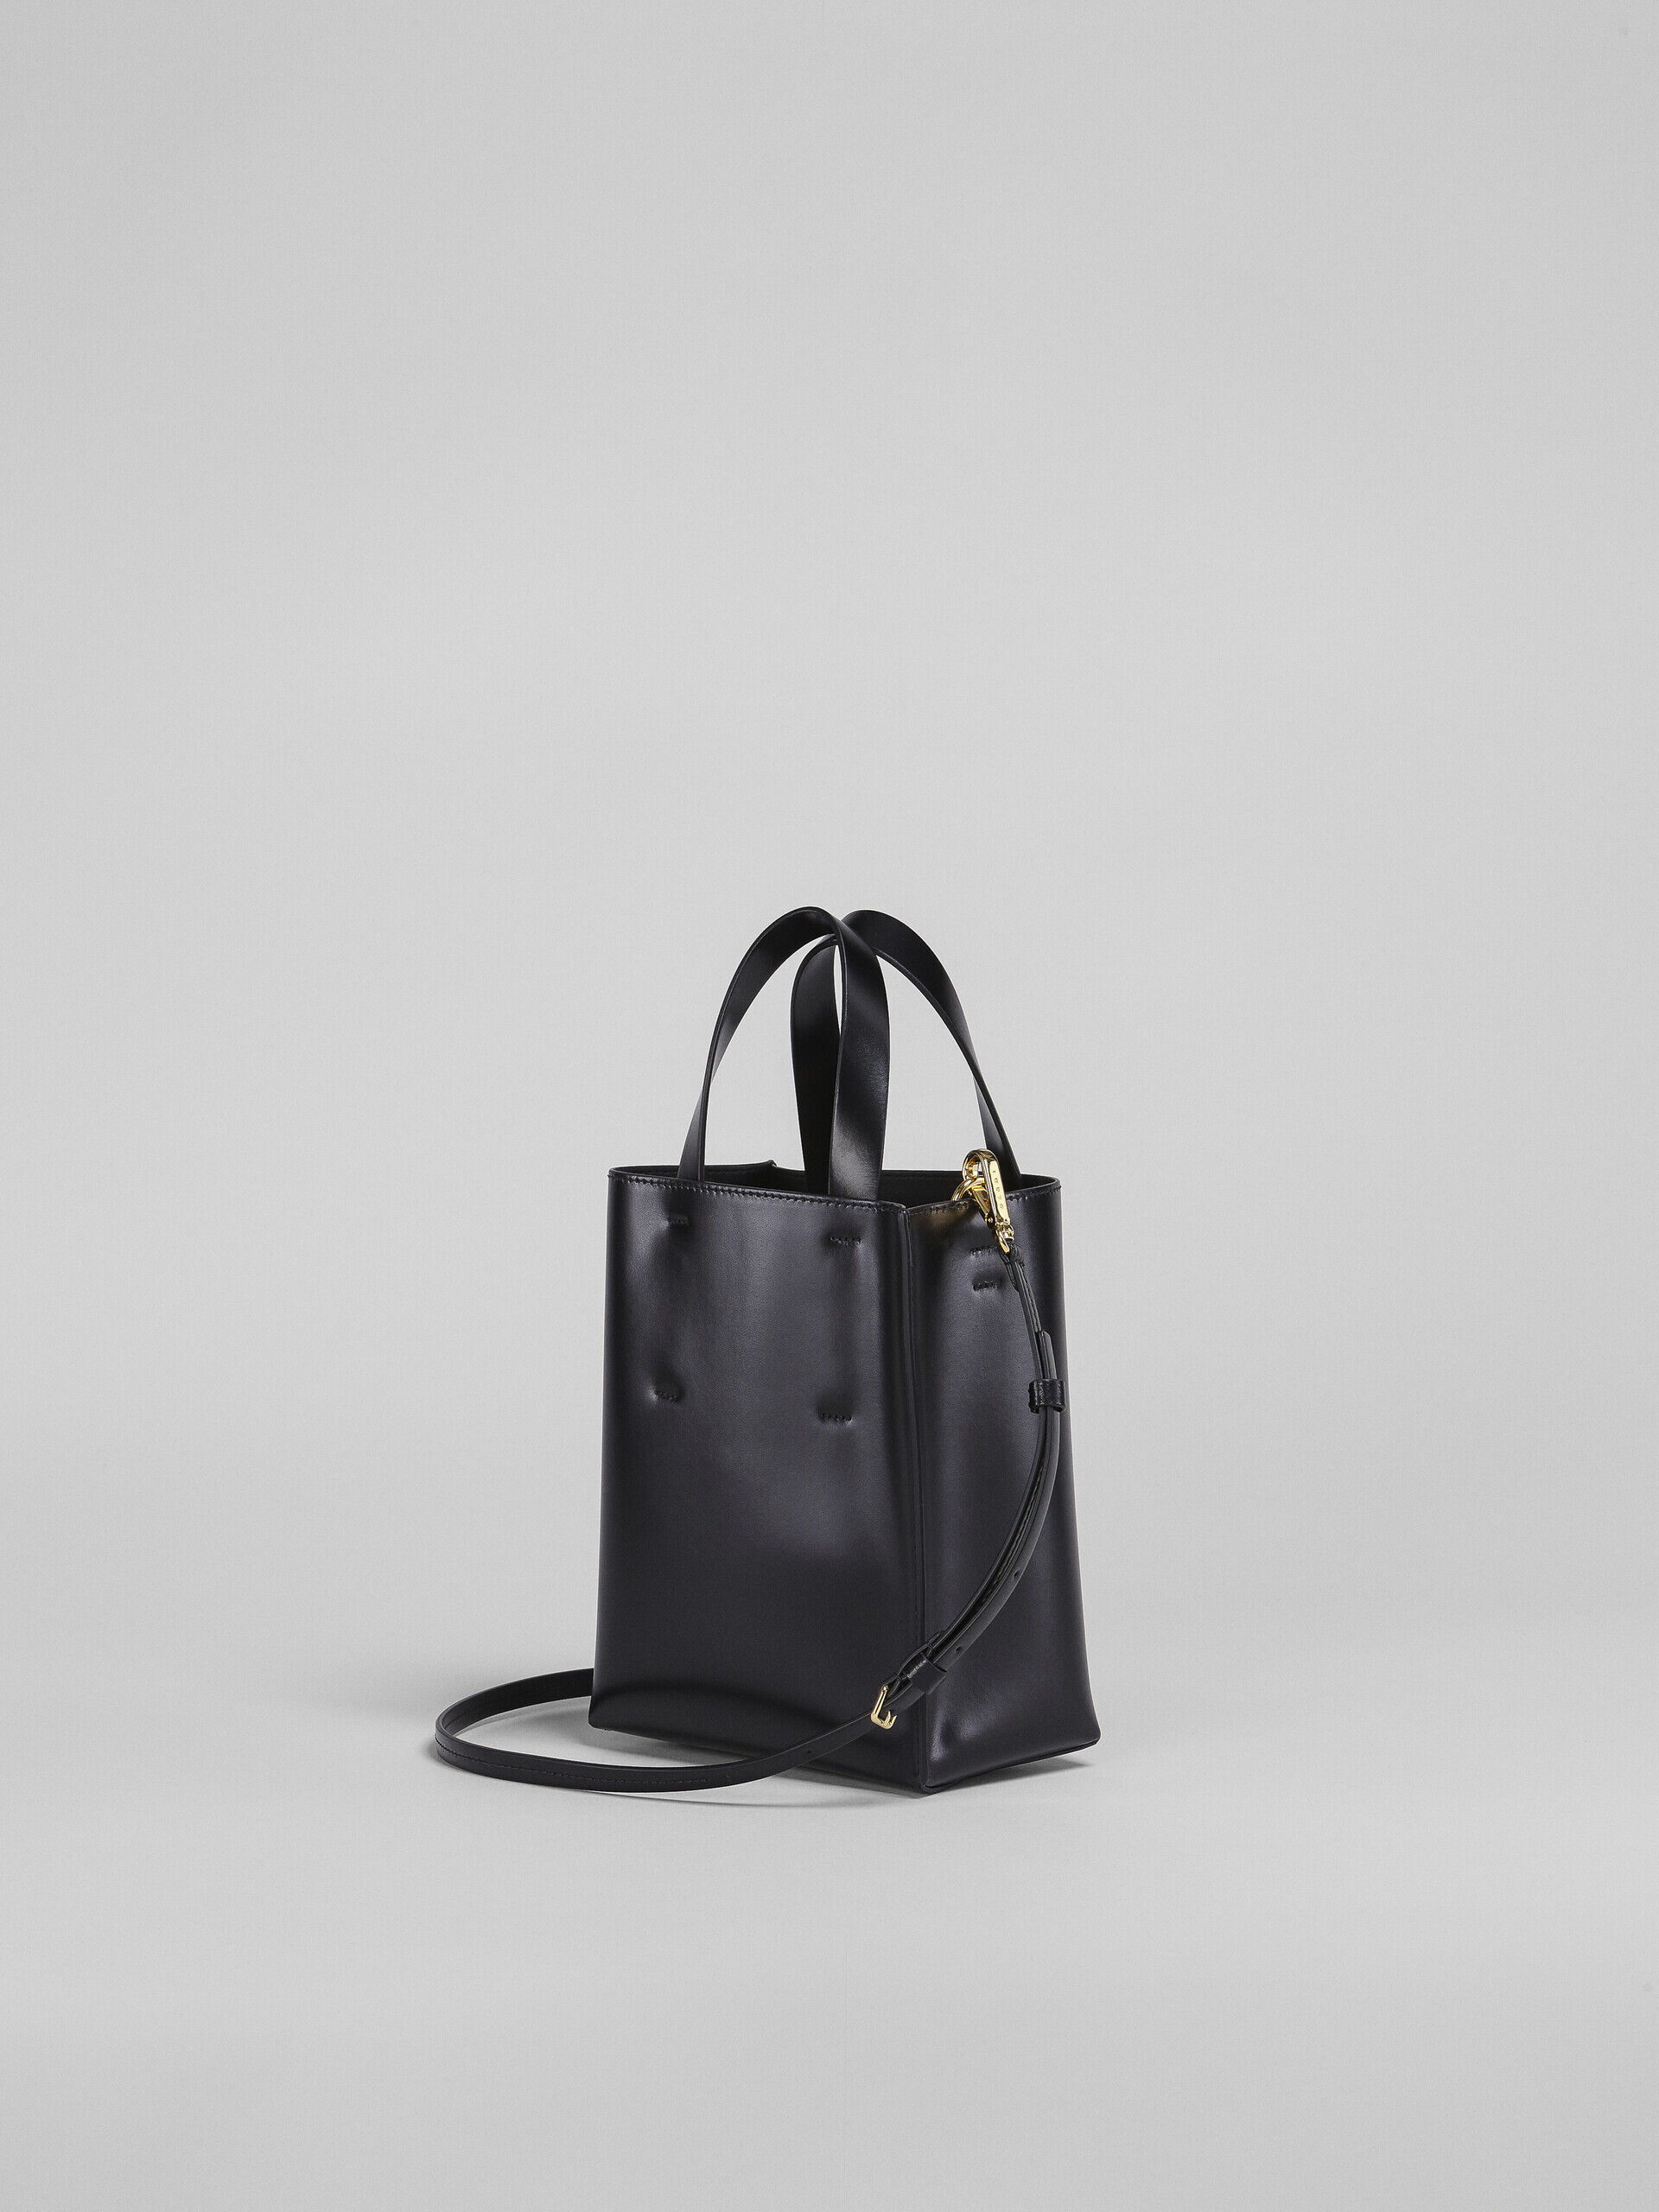 Marni Black Puff E/W Tote Bag